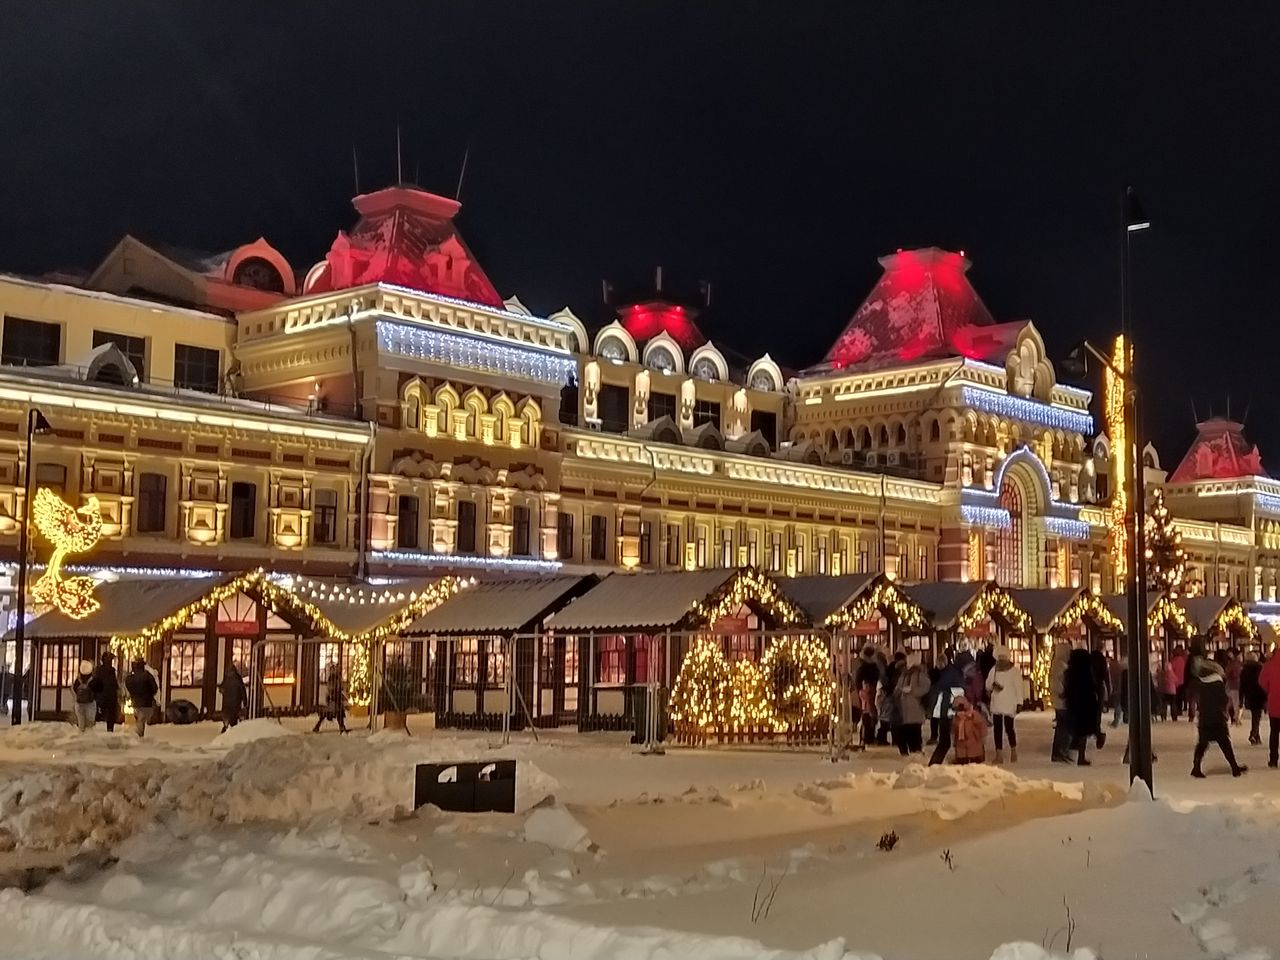 Купеческий Нижний Новгород | Цена 6600₽, отзывы, описание экскурсии